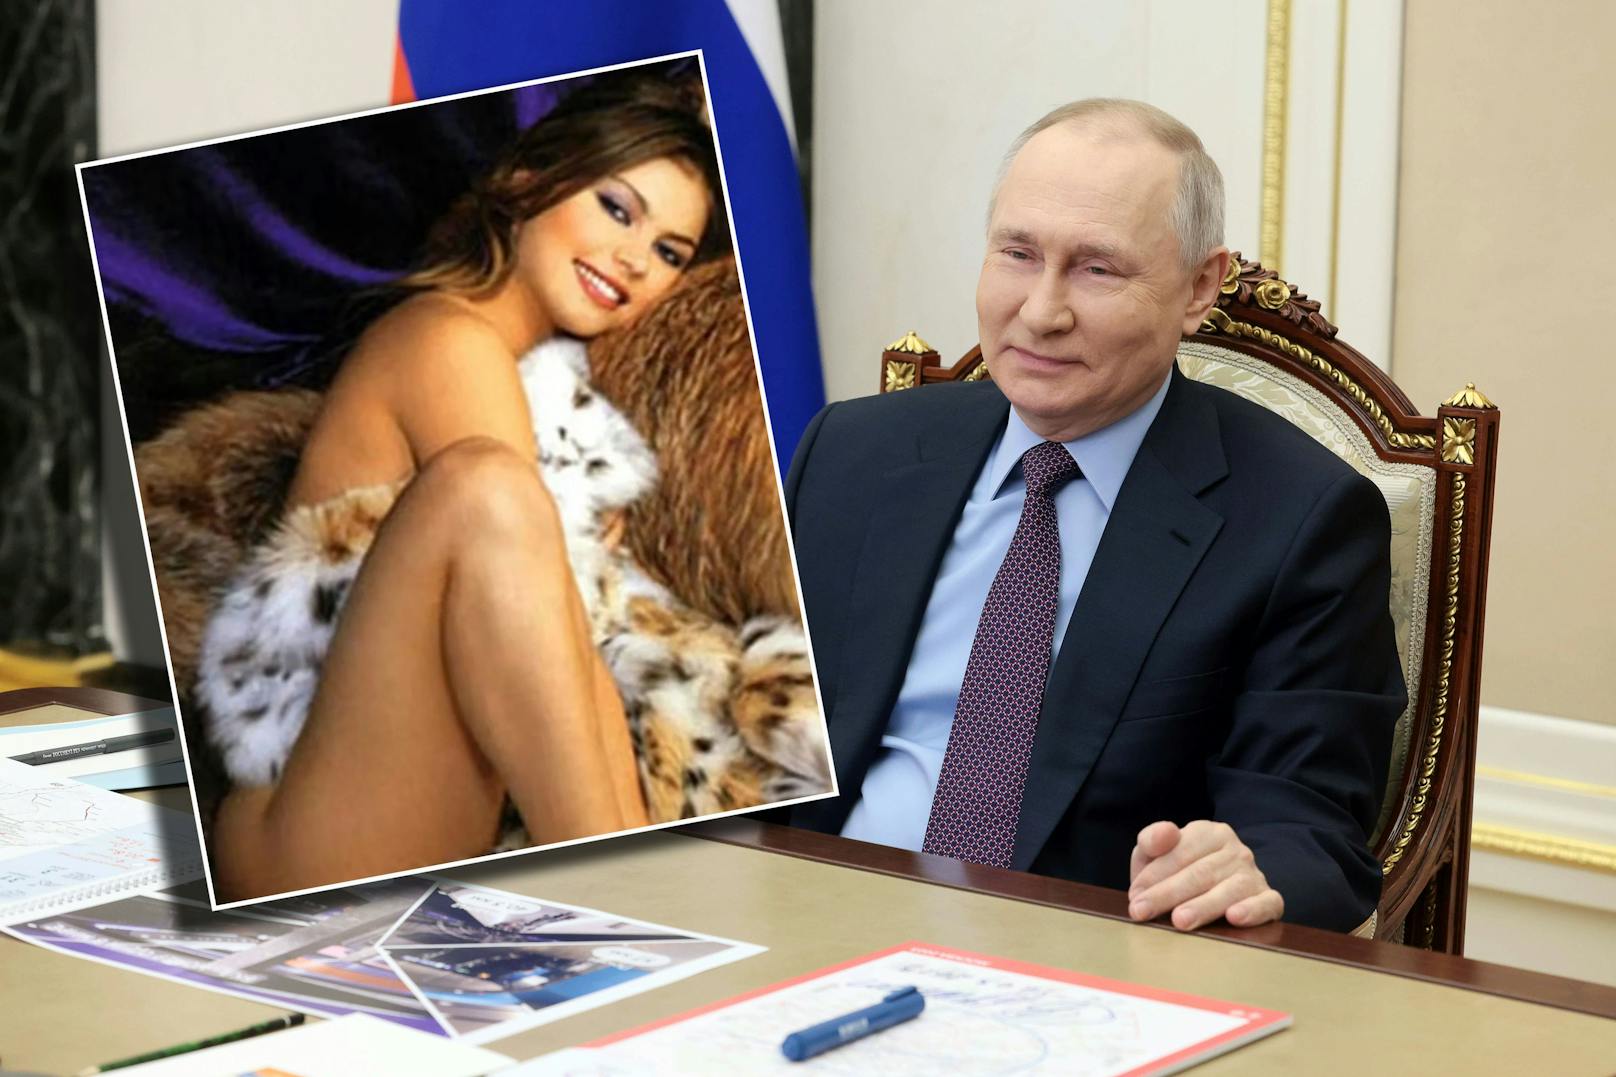 Fotos – das geheime Luxus-Leben von Putins Freundin